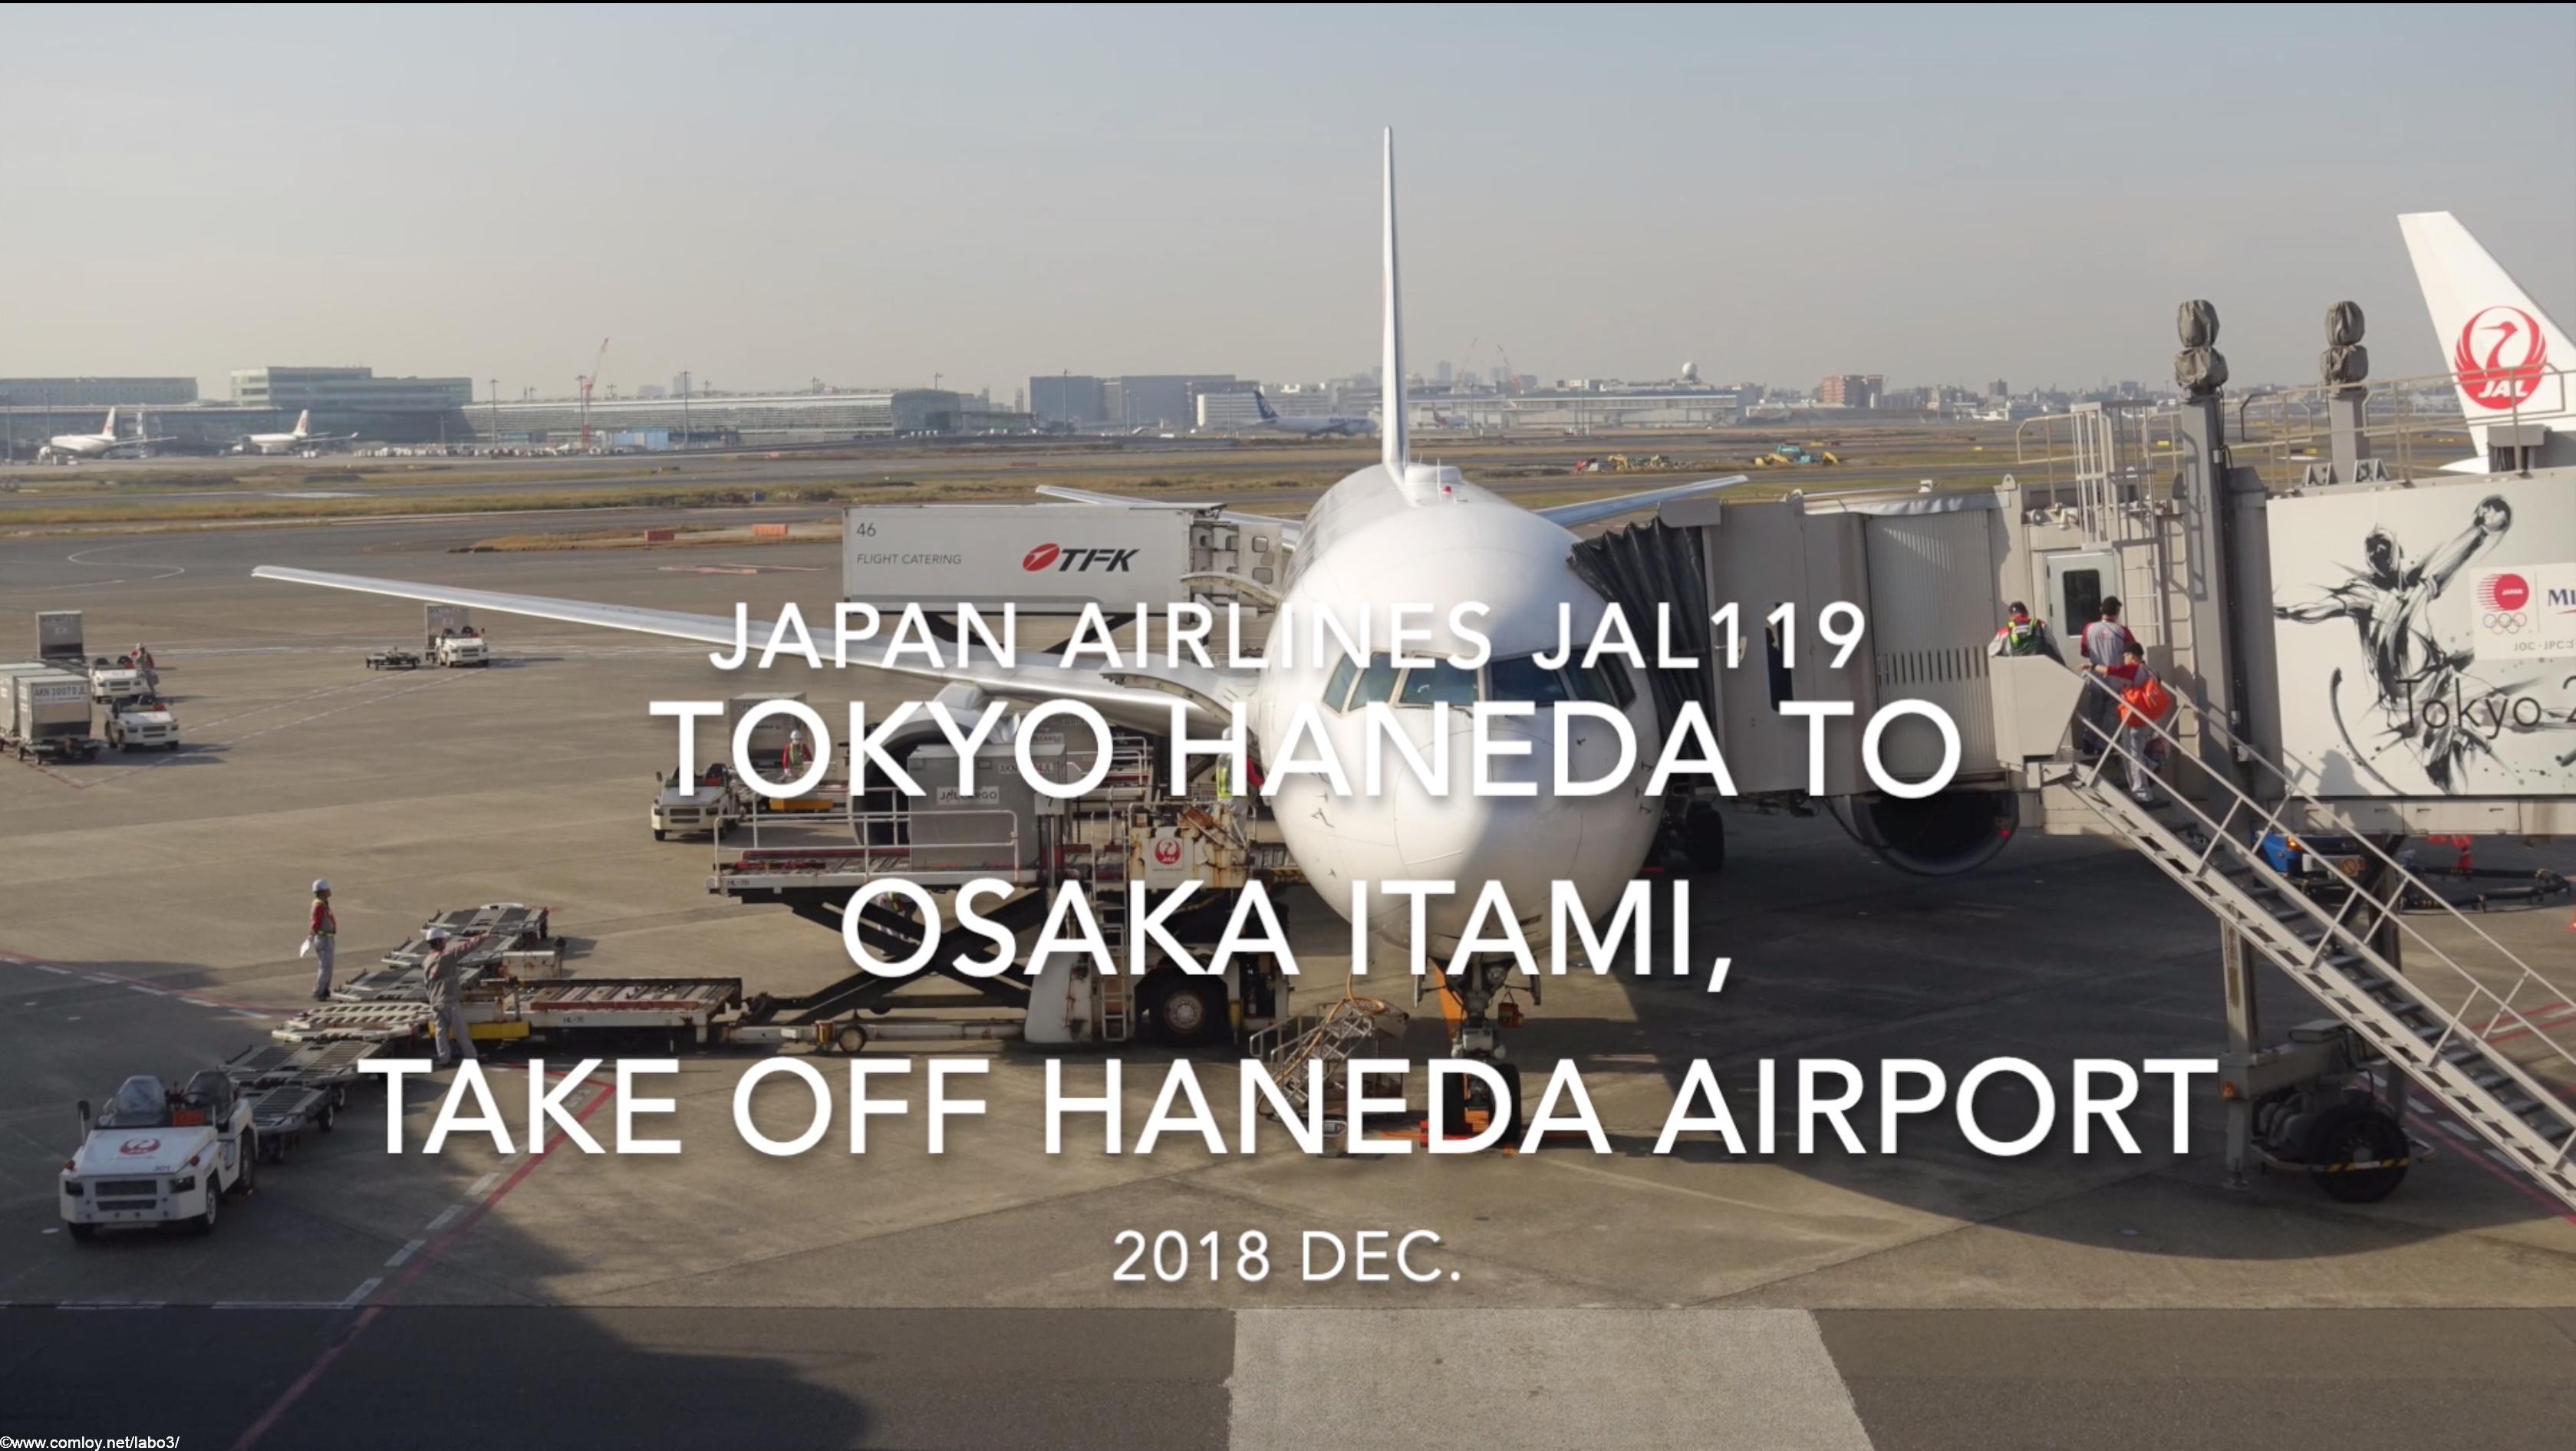 【機内から離着陸映像】2018 Dec. JAPAN Airlines JAL119 TOKYO HANEDA to OSAKA ITAMI, take off HANEDA Airport 日本航空 羽田 - 伊丹 羽田空港離陸